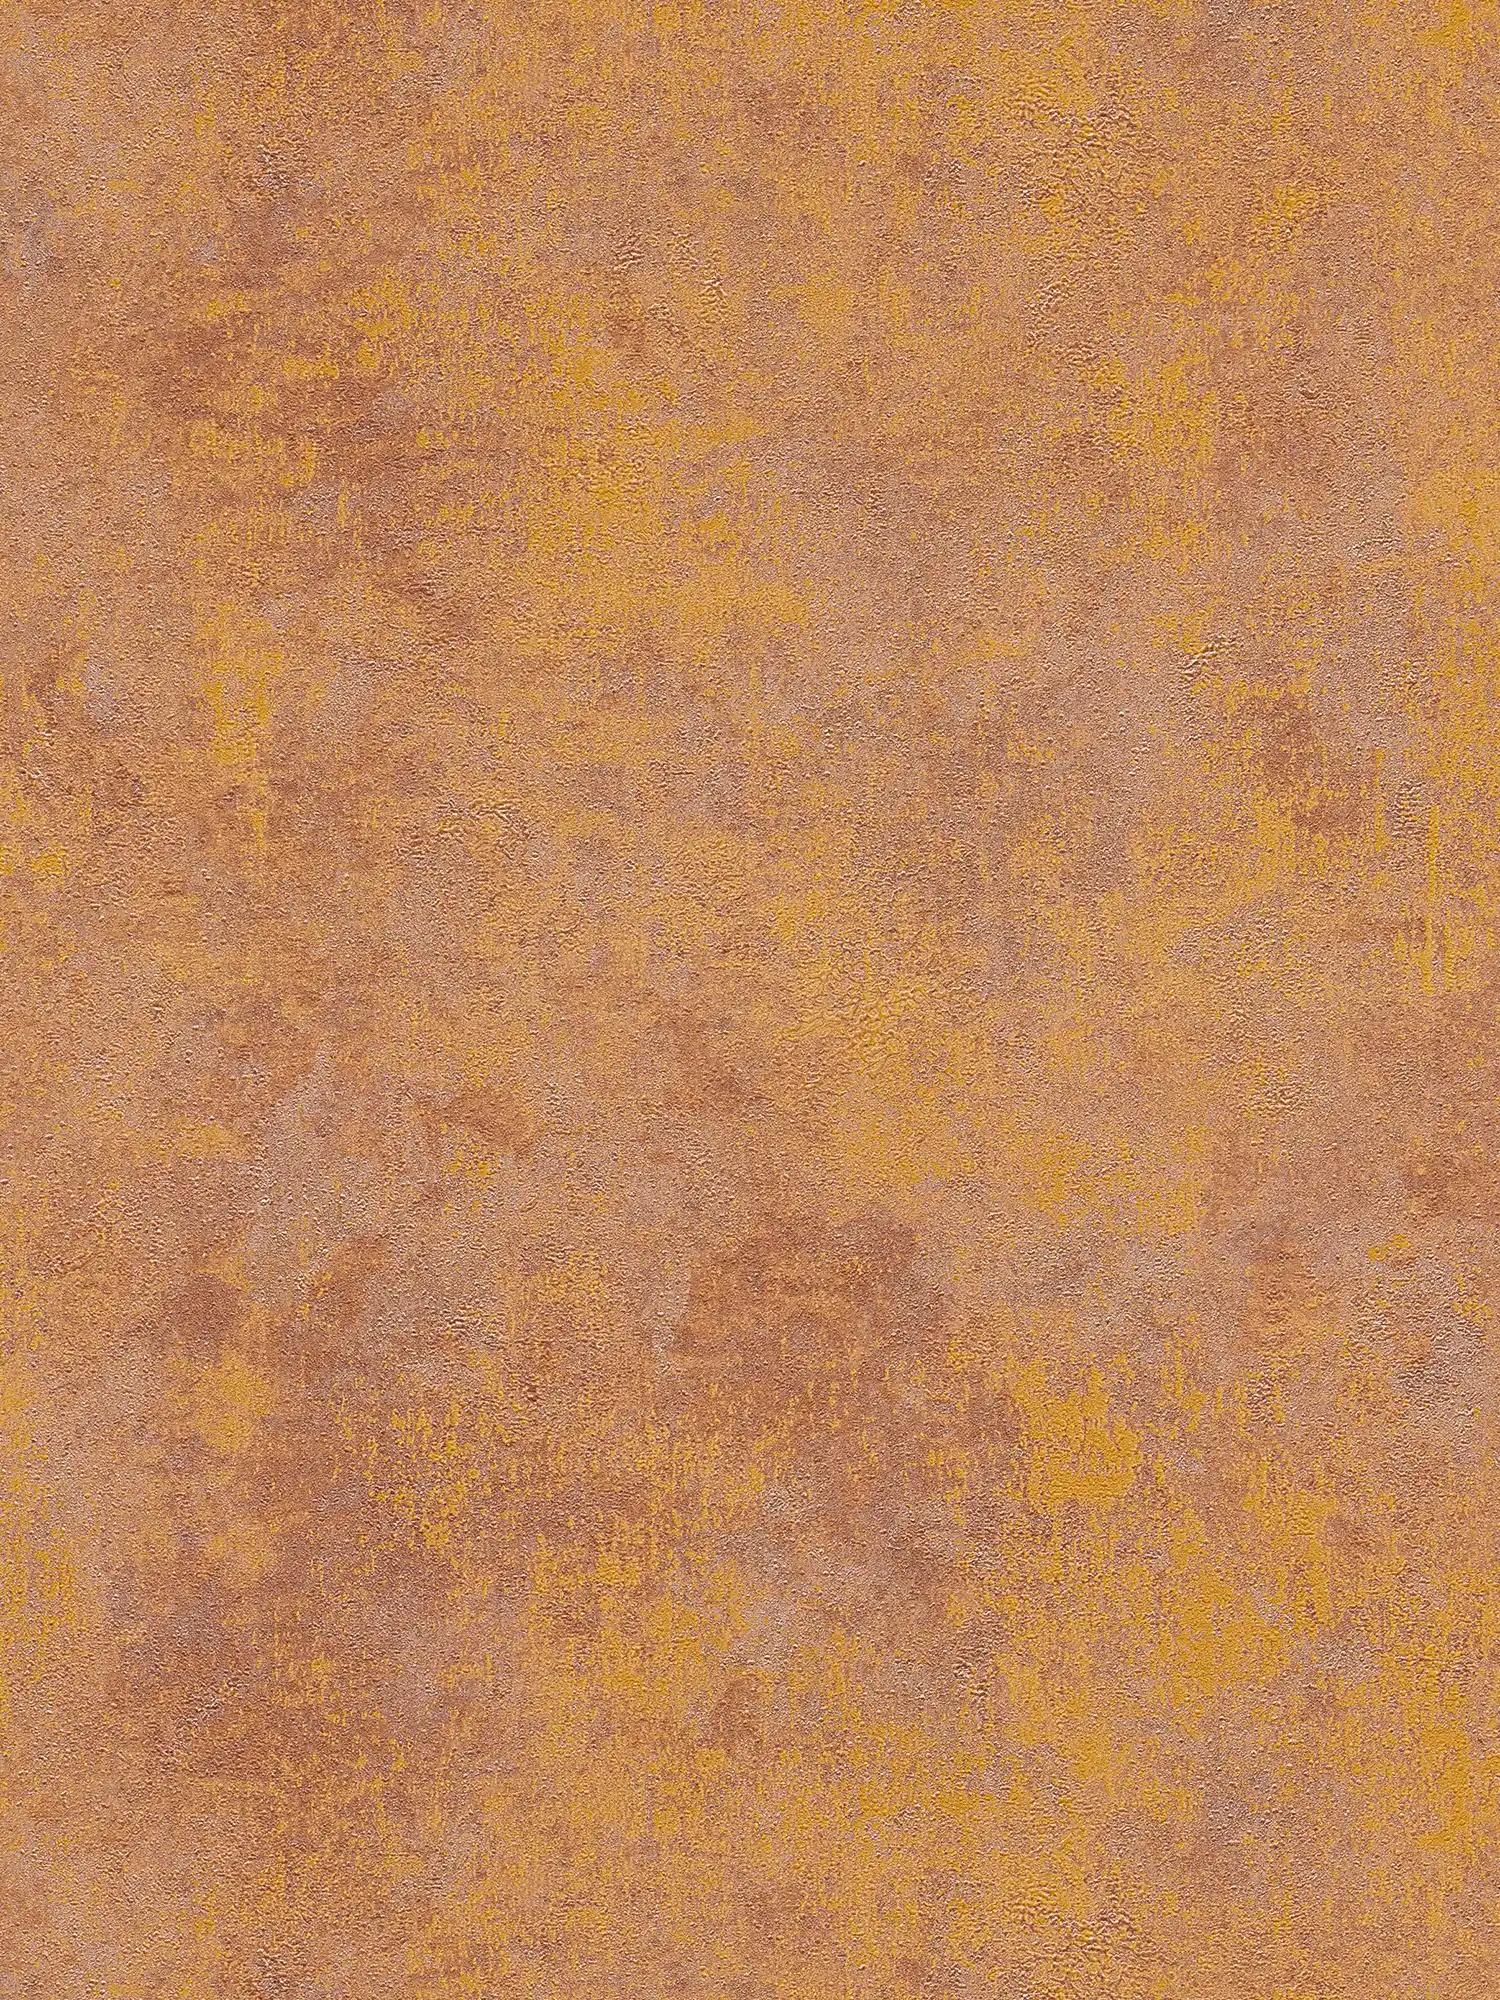 Papel pintado no tejido de aspecto oxidado con efecto brillante - naranja, cobre, marrón
